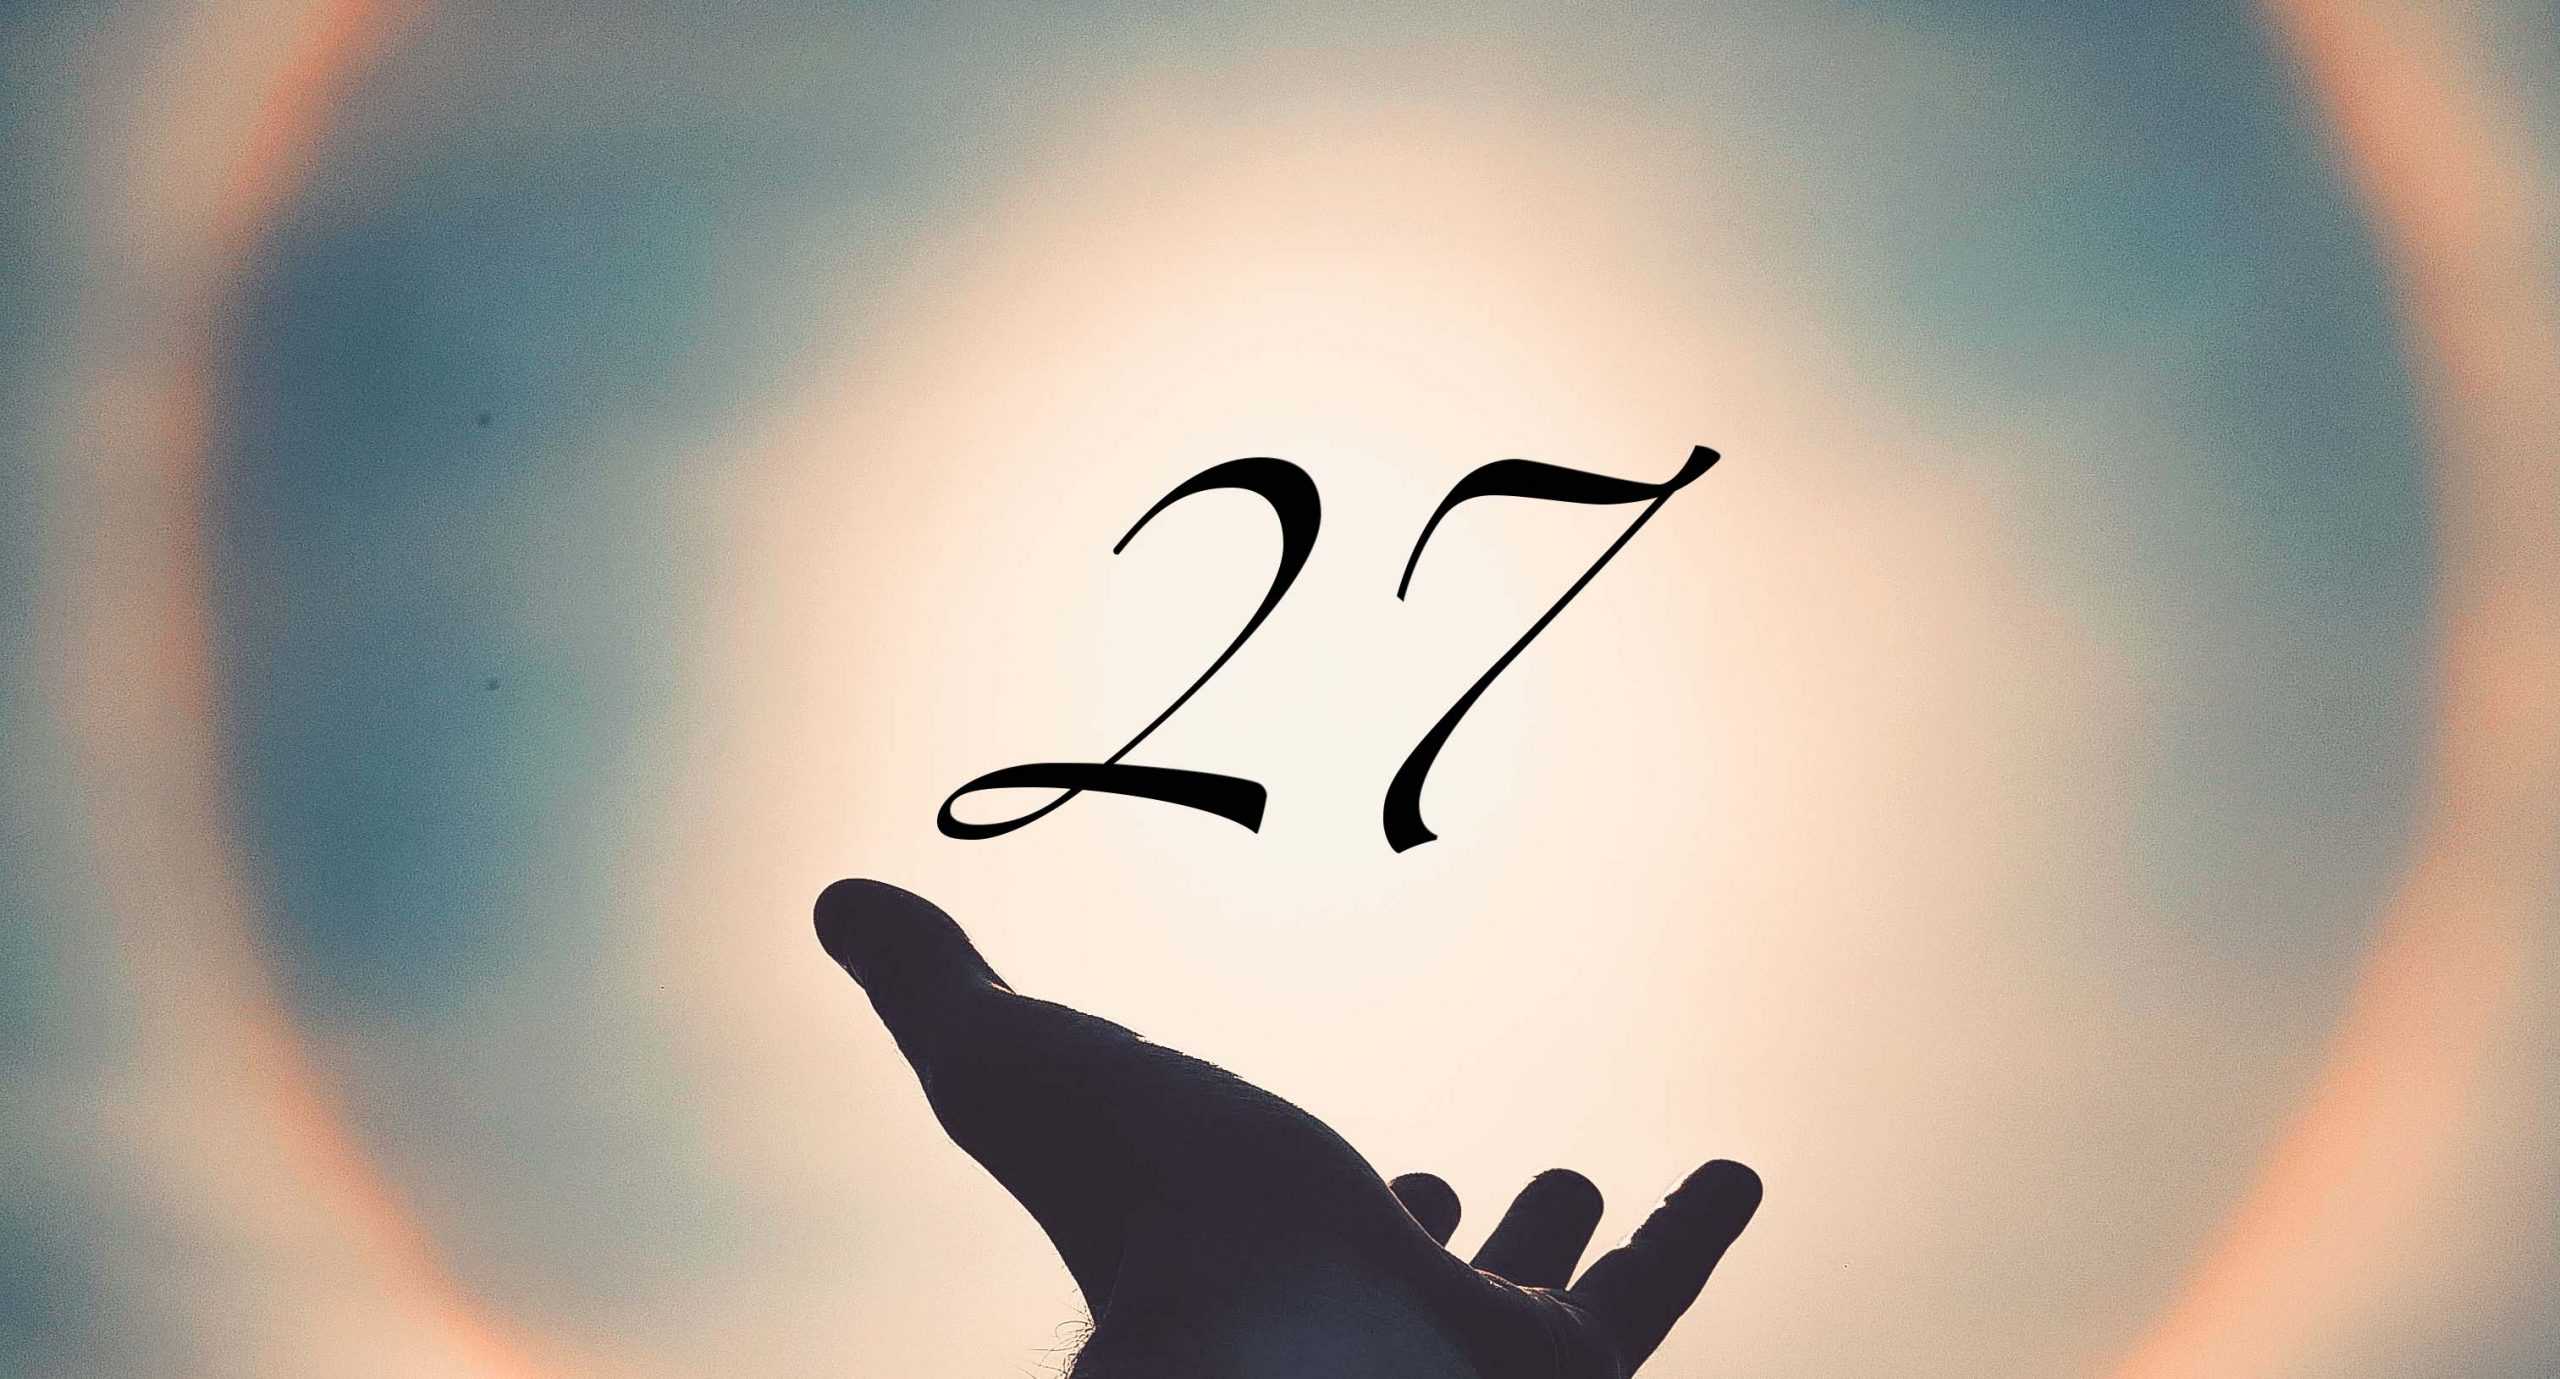 Signification du nombre 27